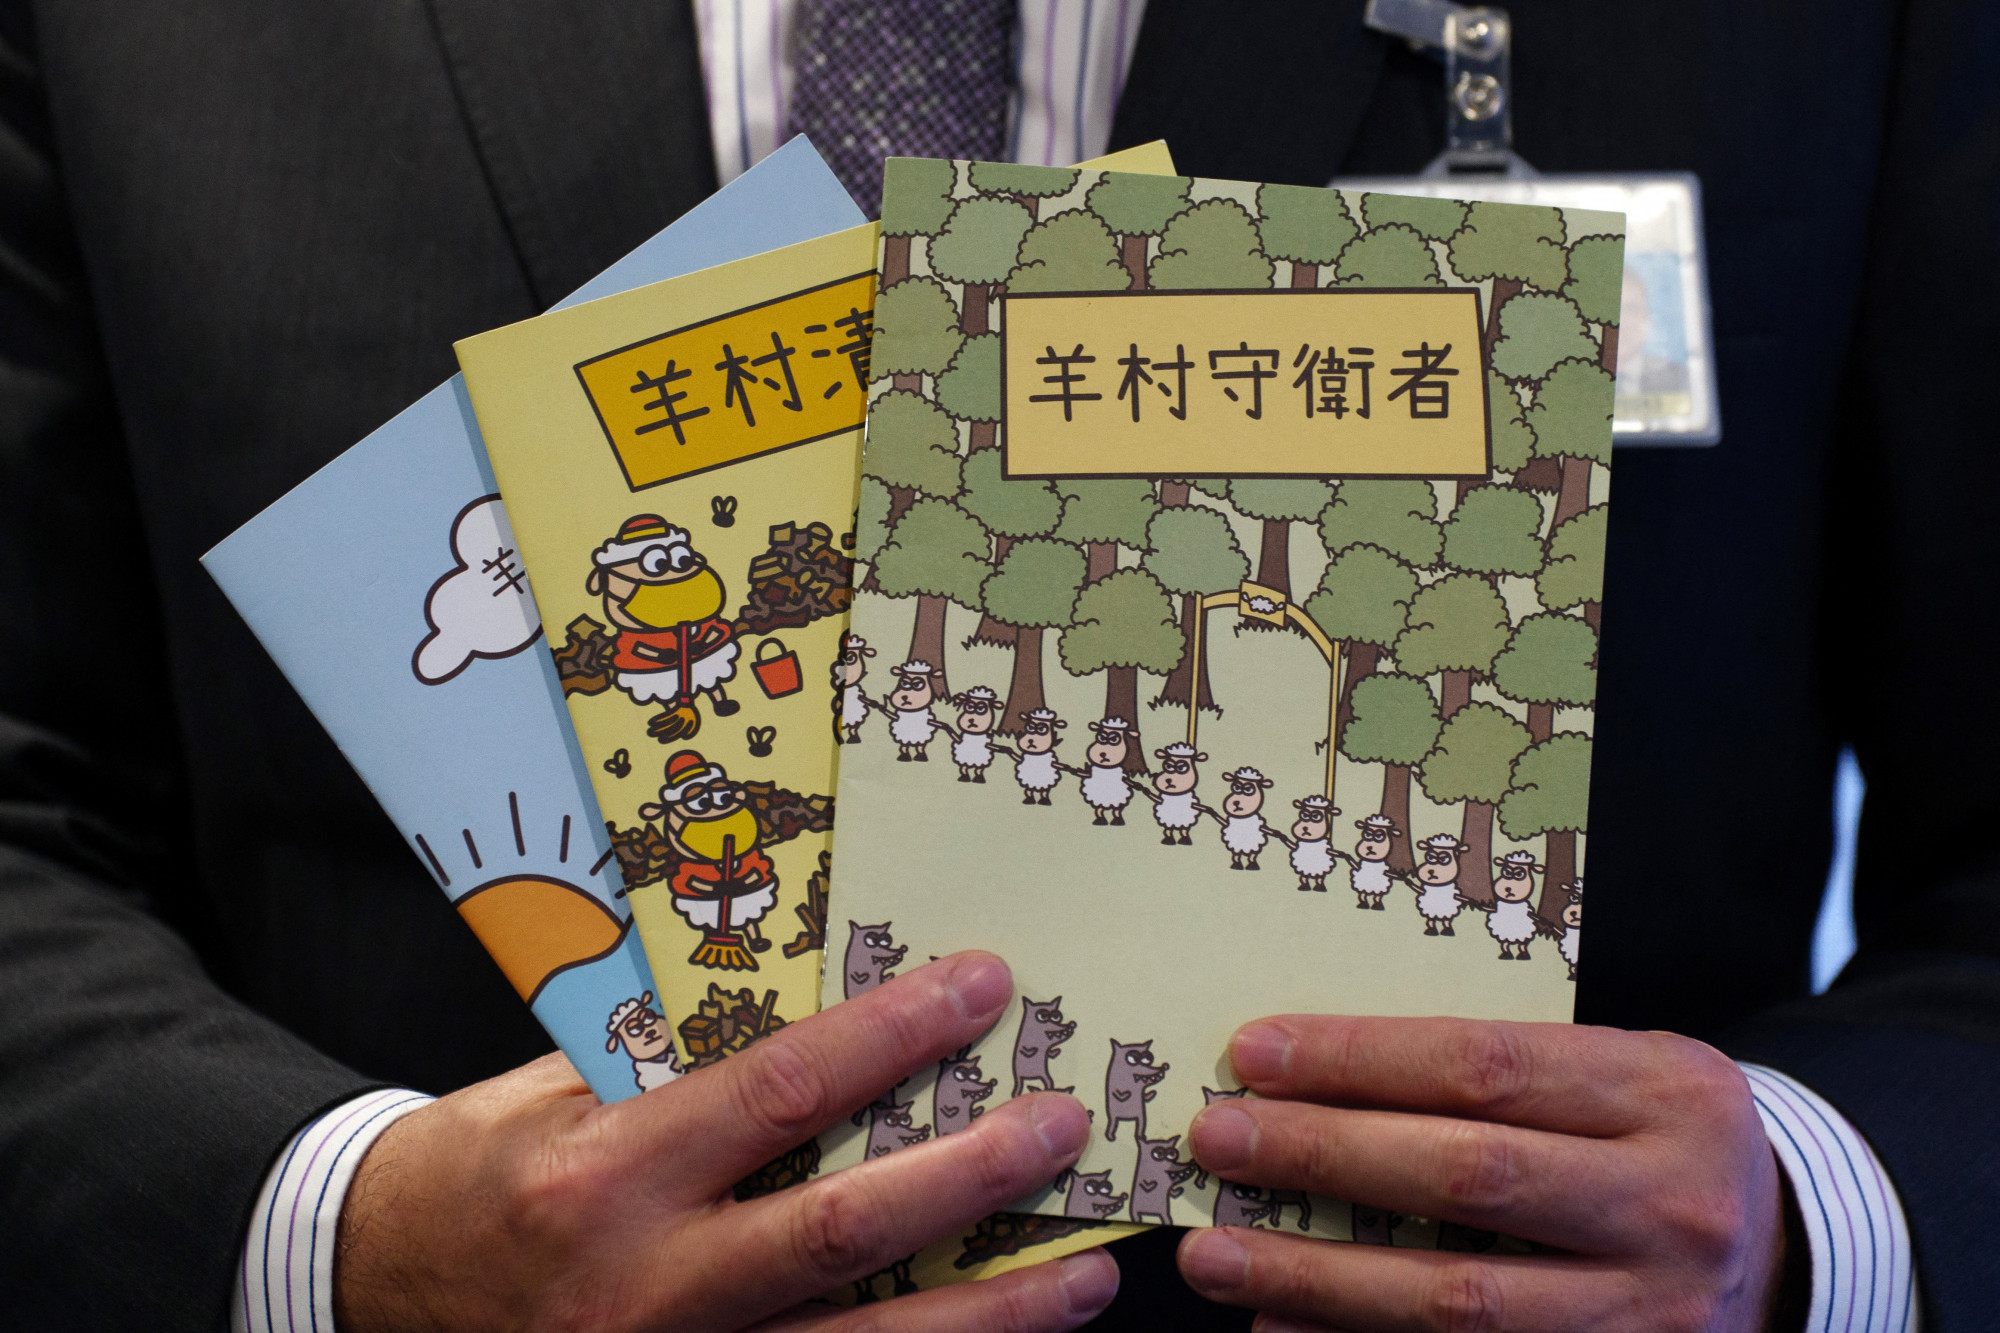 Lázító gyerekkönyvek miatt ítéltek 19 hónap börtönre logopédusokat Hongkongban